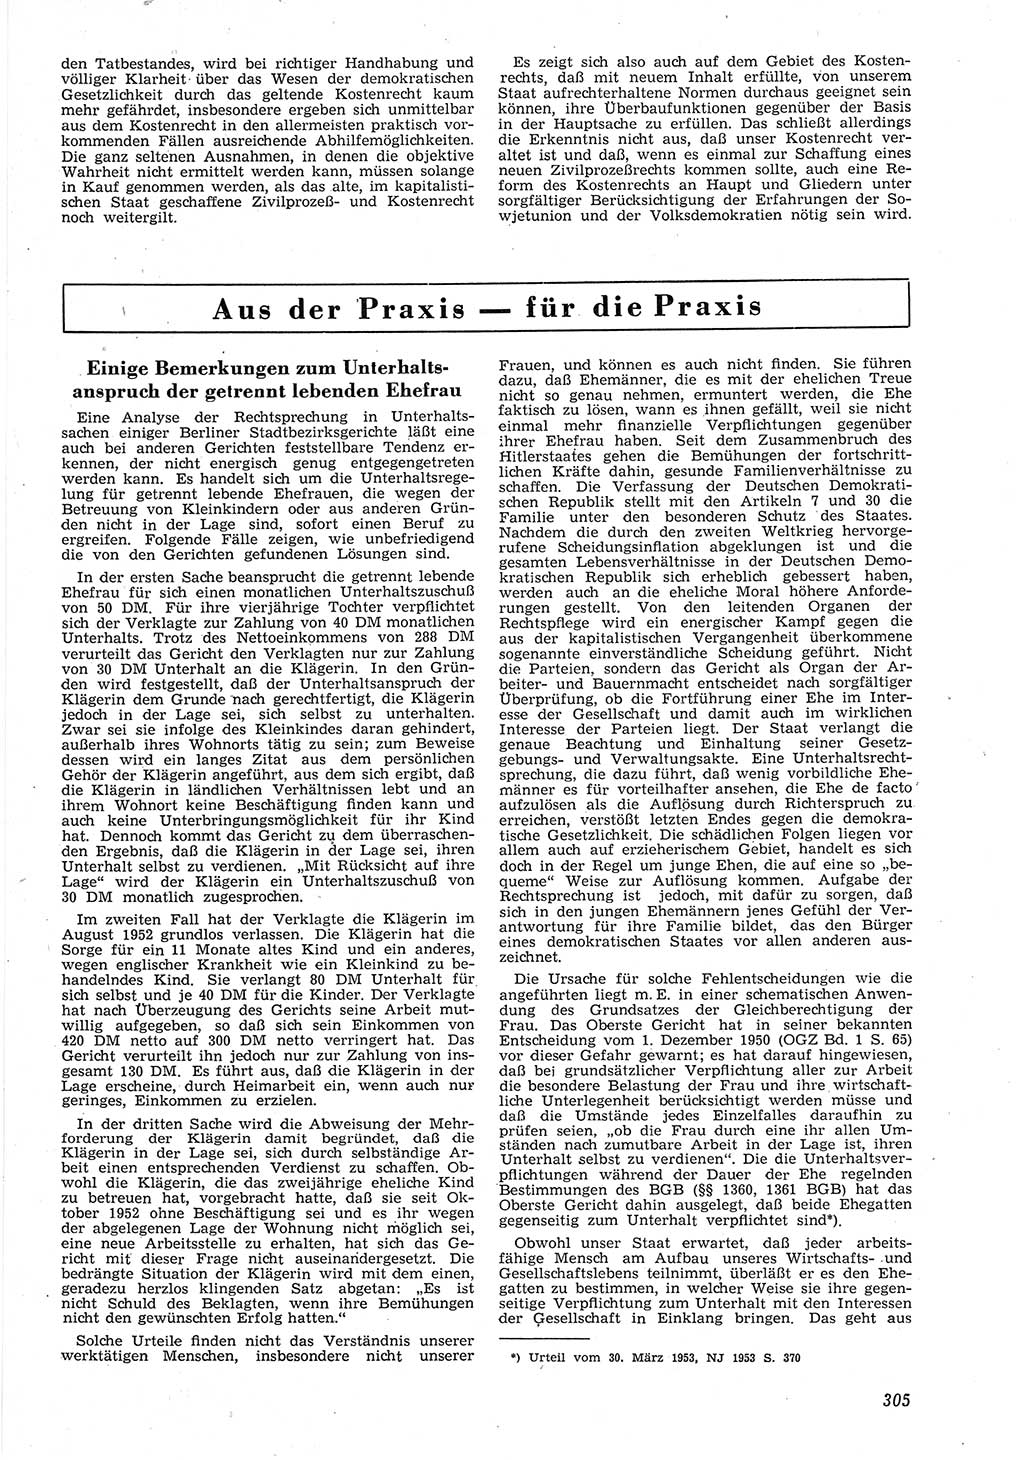 Neue Justiz (NJ), Zeitschrift für Recht und Rechtswissenschaft [Deutsche Demokratische Republik (DDR)], 8. Jahrgang 1954, Seite 305 (NJ DDR 1954, S. 305)